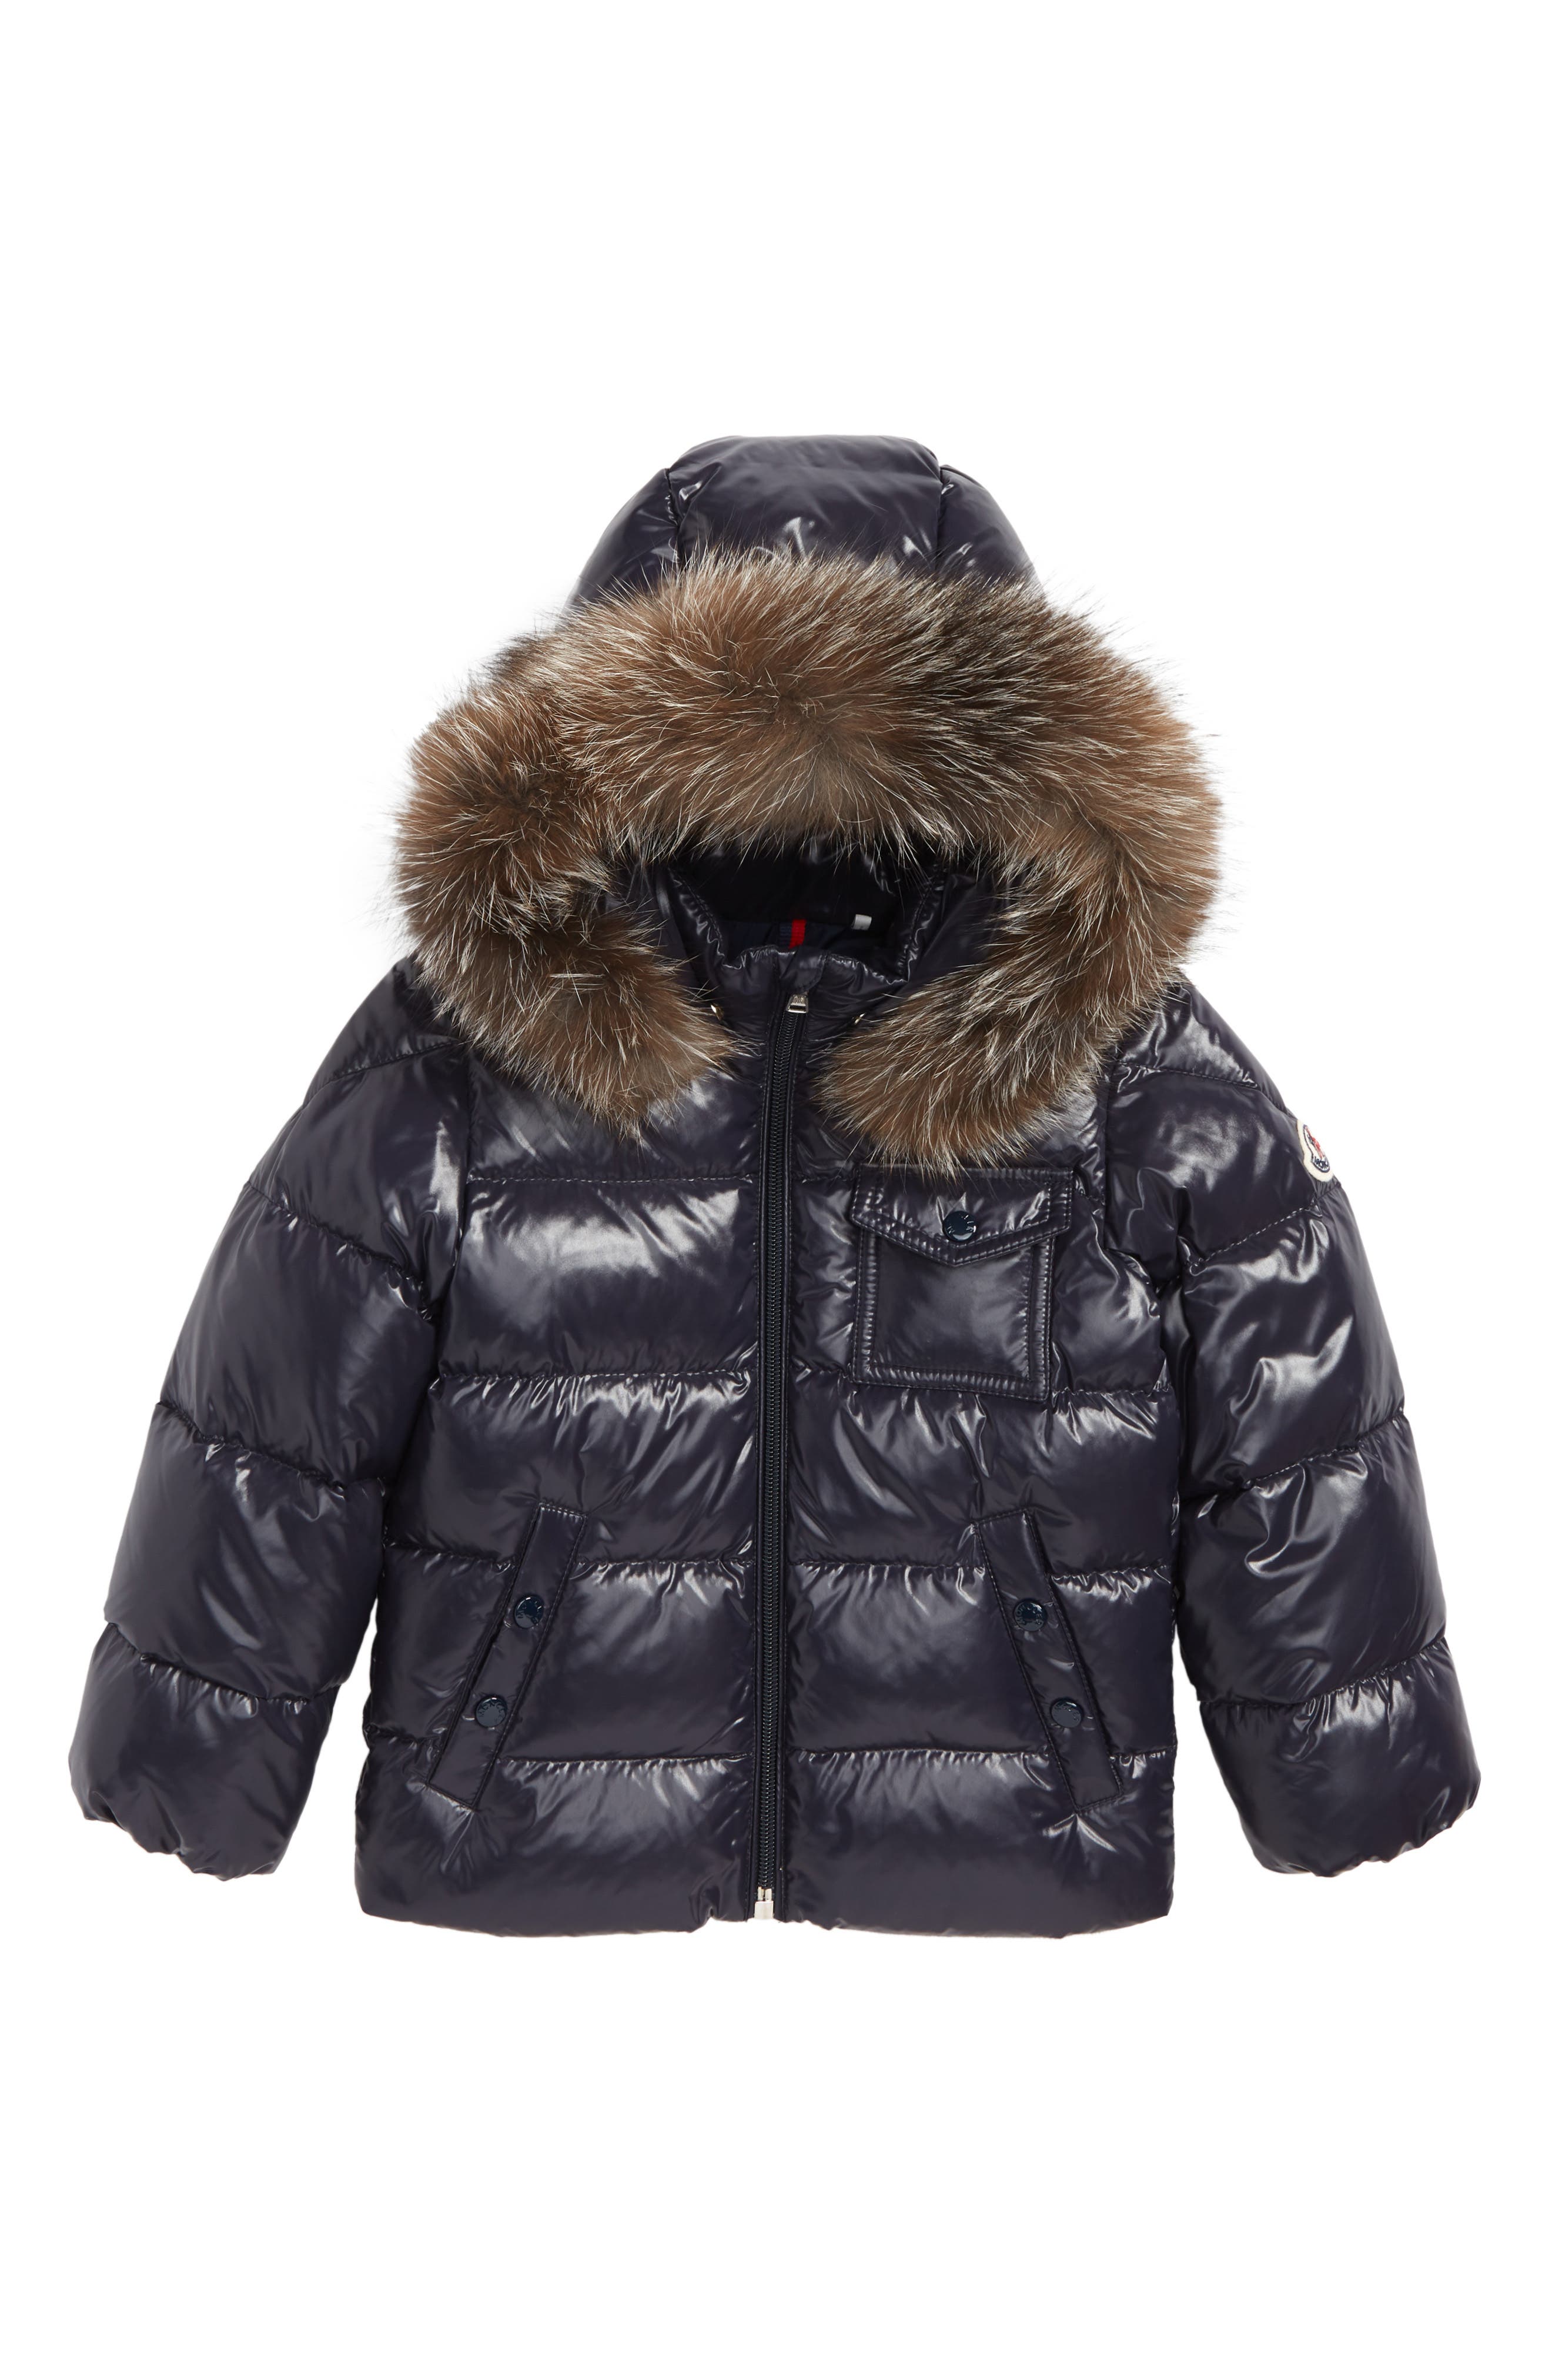 moncler children's jackets sale